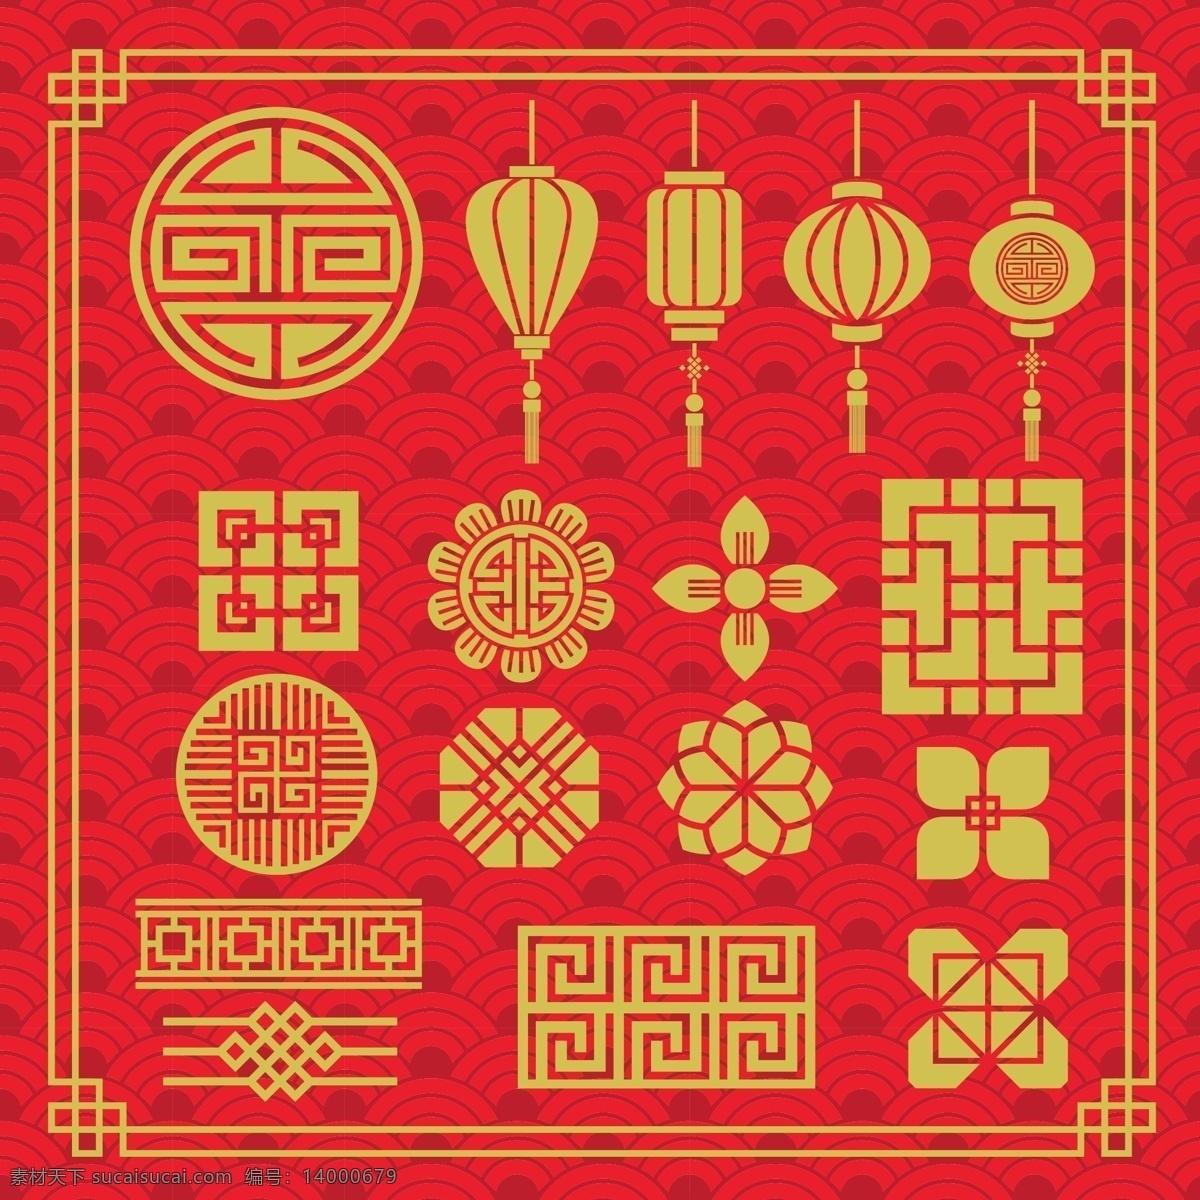 中国传统纹样 传统纹样 纹饰 花纹 线条 边框 雕花 中式 灯笼 云纹 祥云 吉祥图案 中国风 中国风元素 文化艺术 传统文化